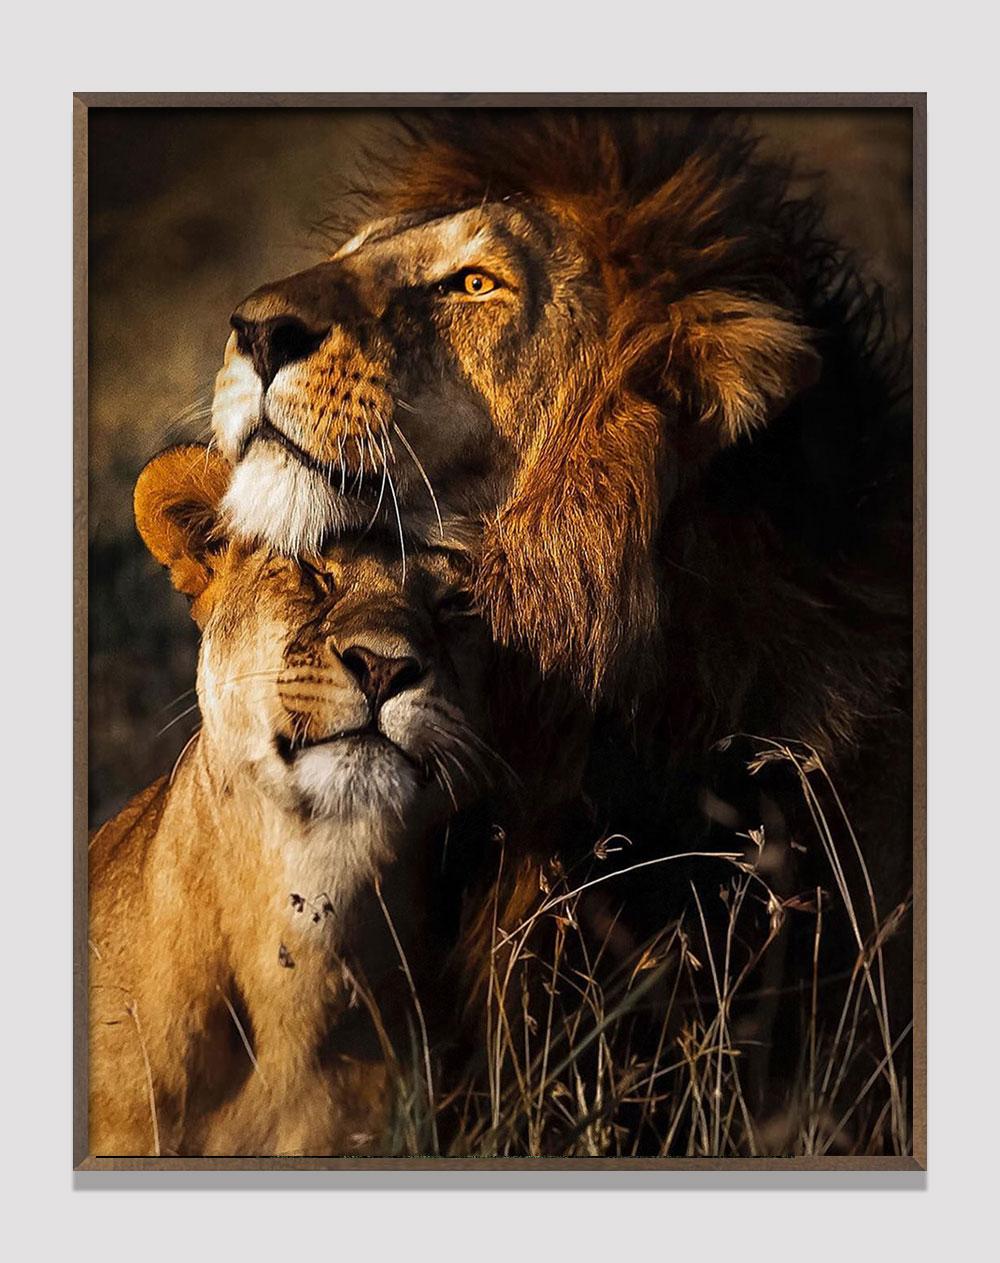 Araquém Alcãntara - Lion and lioness II, Tanzania, Africa - Photograph by Araquém Alcântara